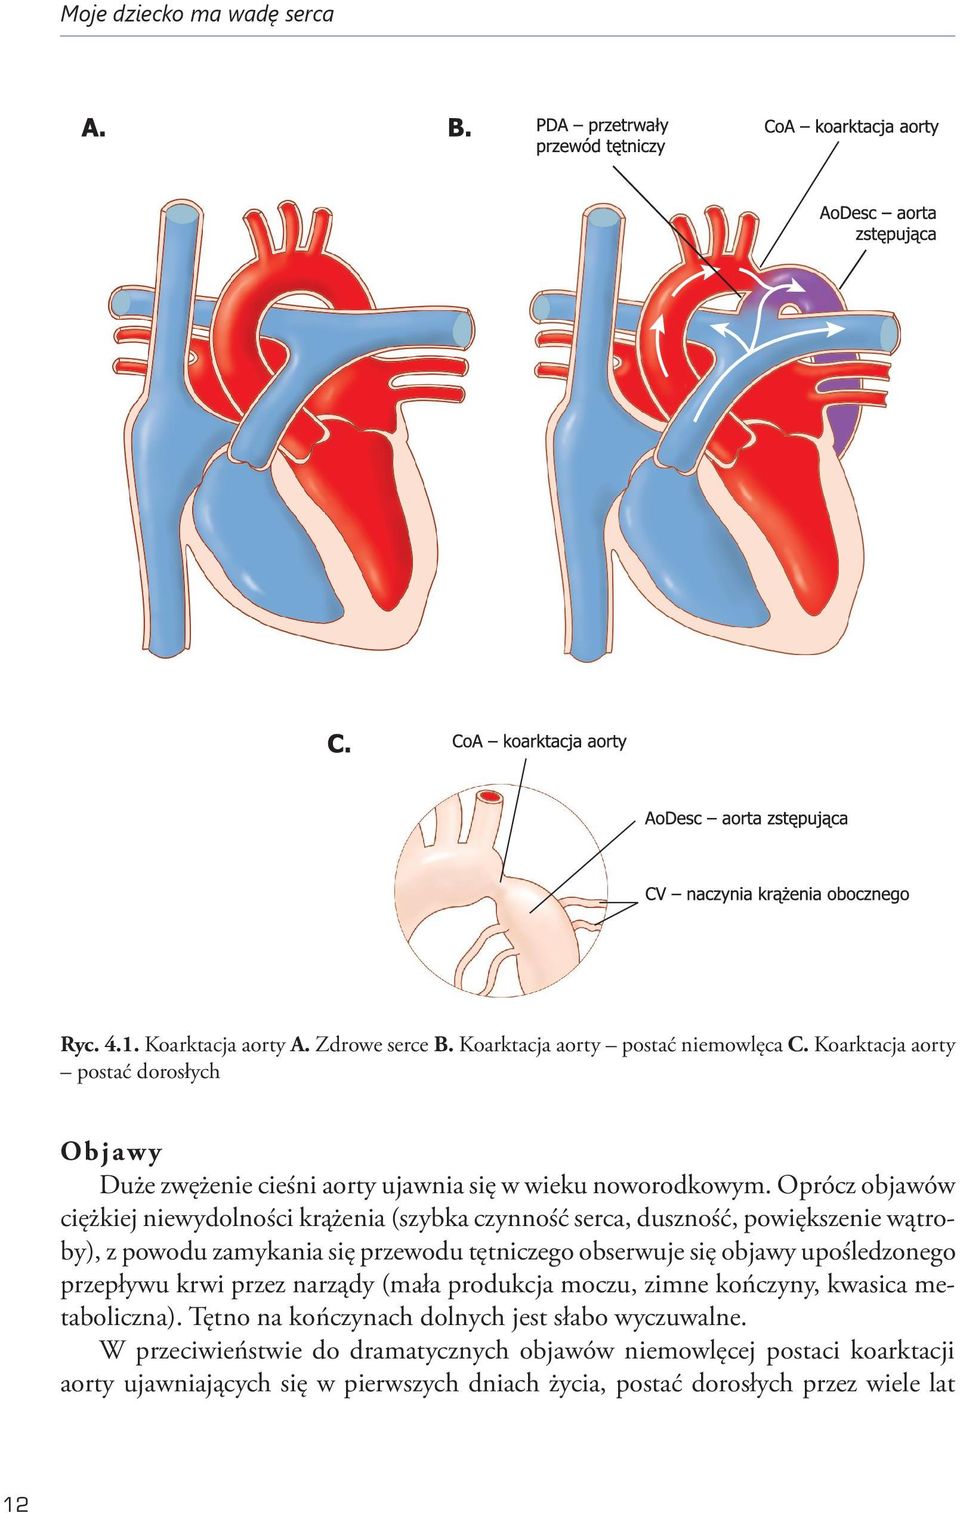 Oprócz objawów ciężkiej niewydolności krążenia (szybka czynność serca, duszność, powiększenie wątroby), z powodu zamykania się przewodu tętniczego obserwuje się objawy